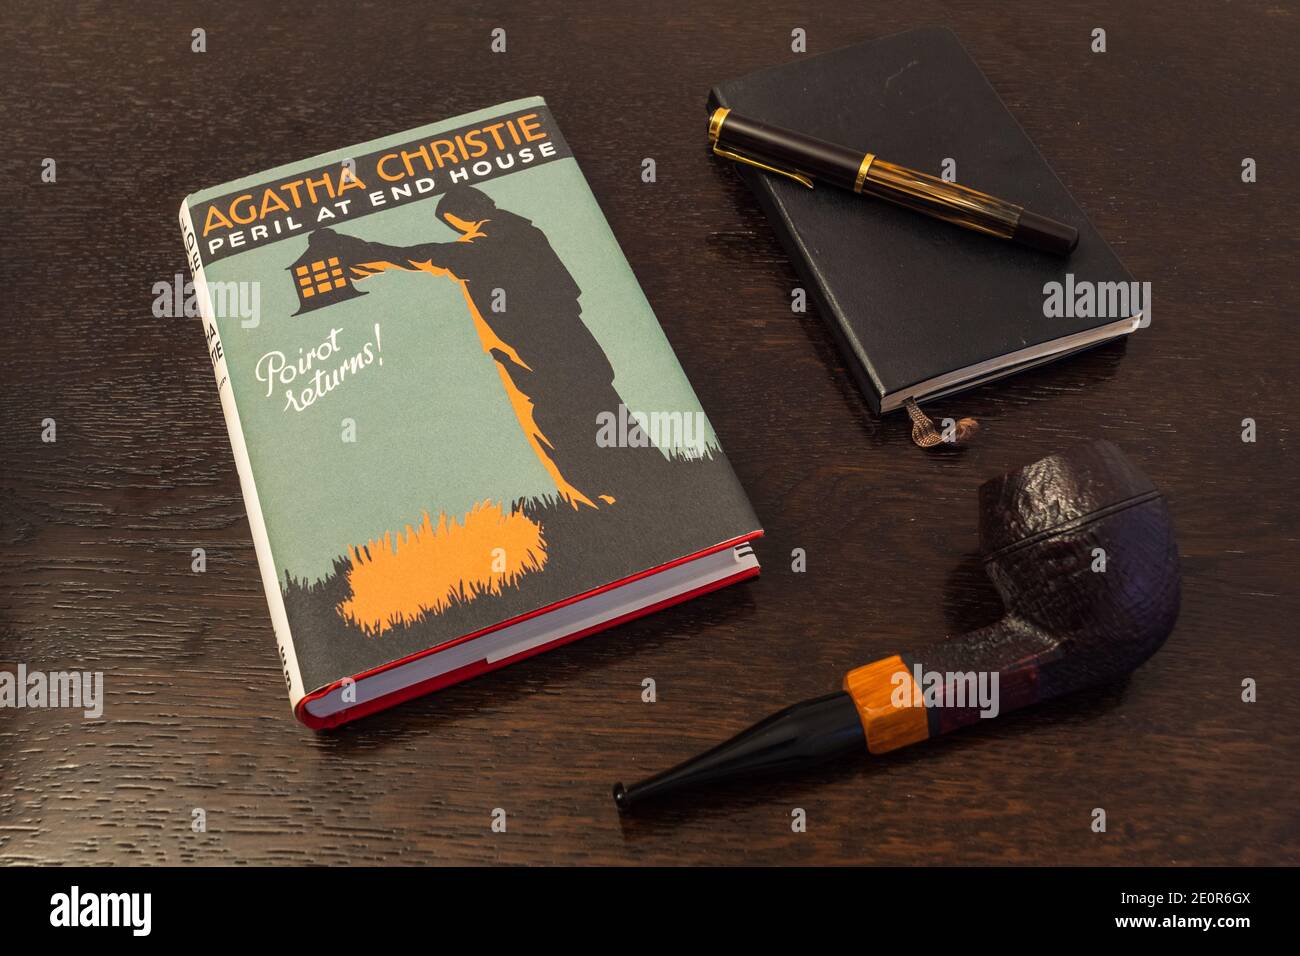 London, England, UK - 2. Januar 2021: Peril at End House Buch von Agatha Christie in einer Faksimile-Erstausgabe mit Tabakpfeife, Fountian Pen und Note Stockfoto